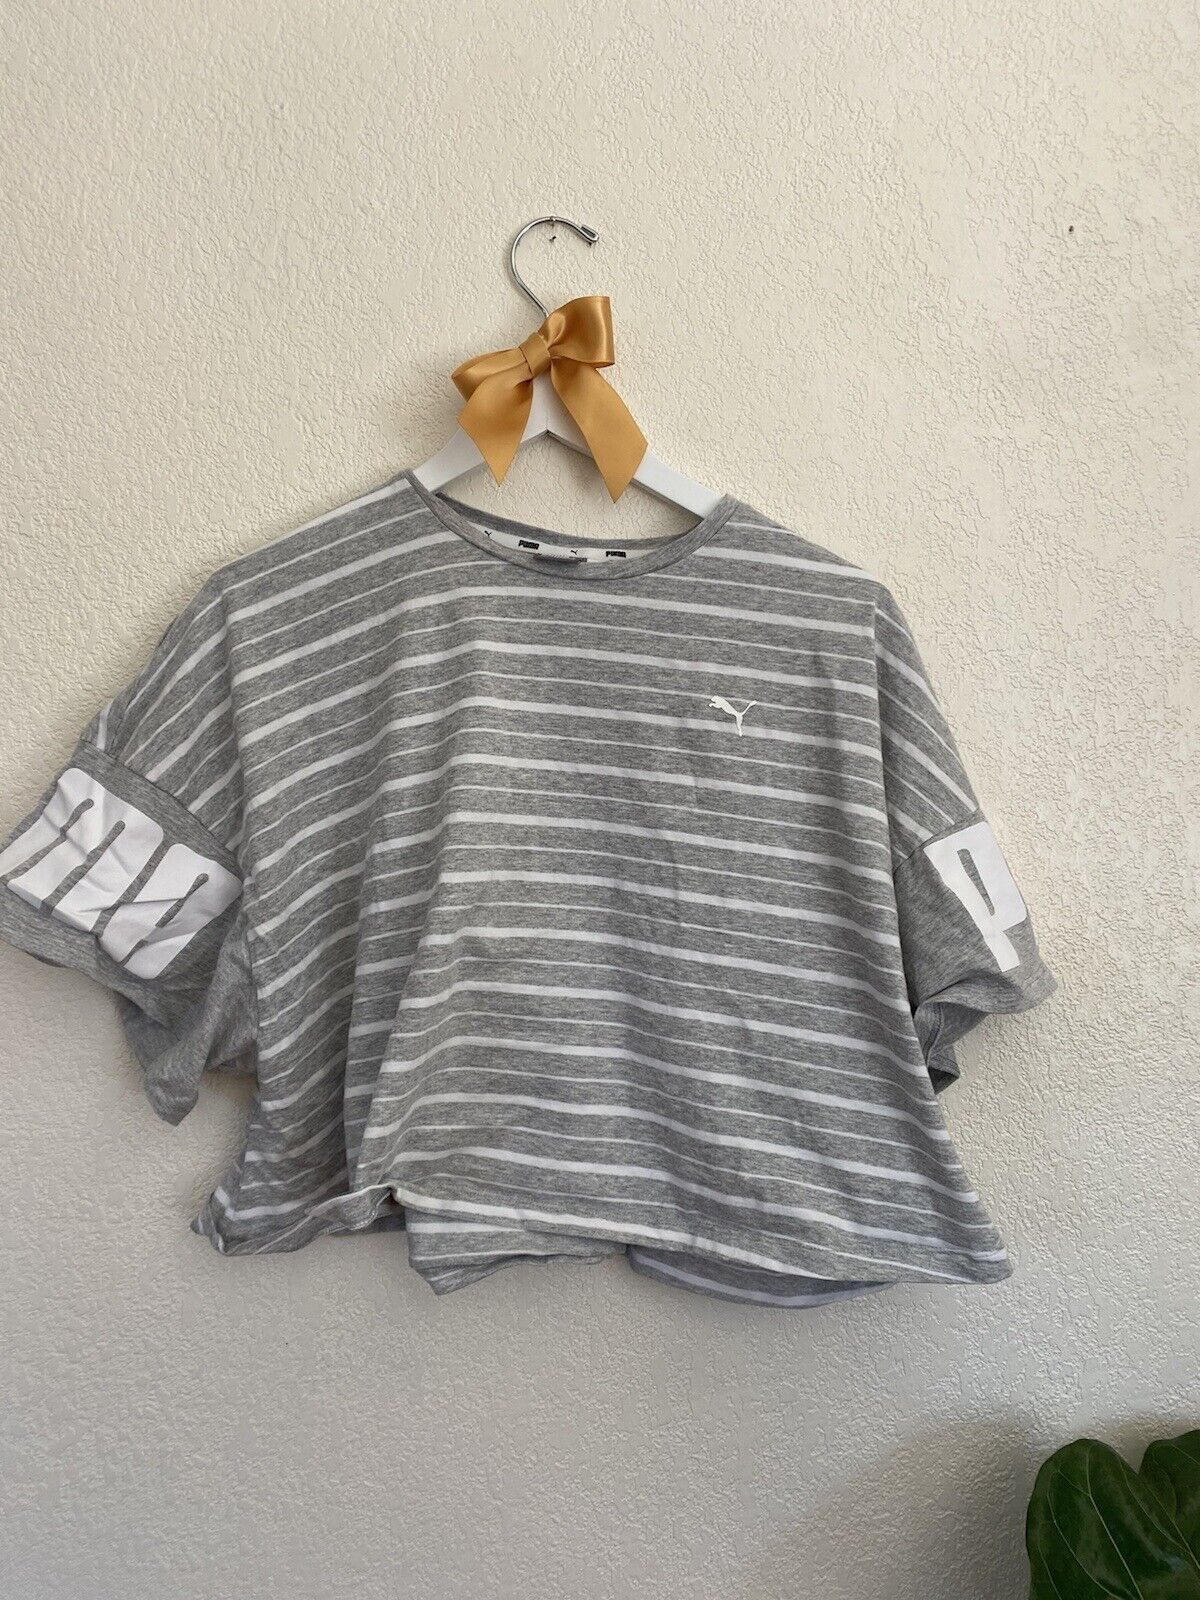 Gray Striped Tshirt - Puma - Women’s XL